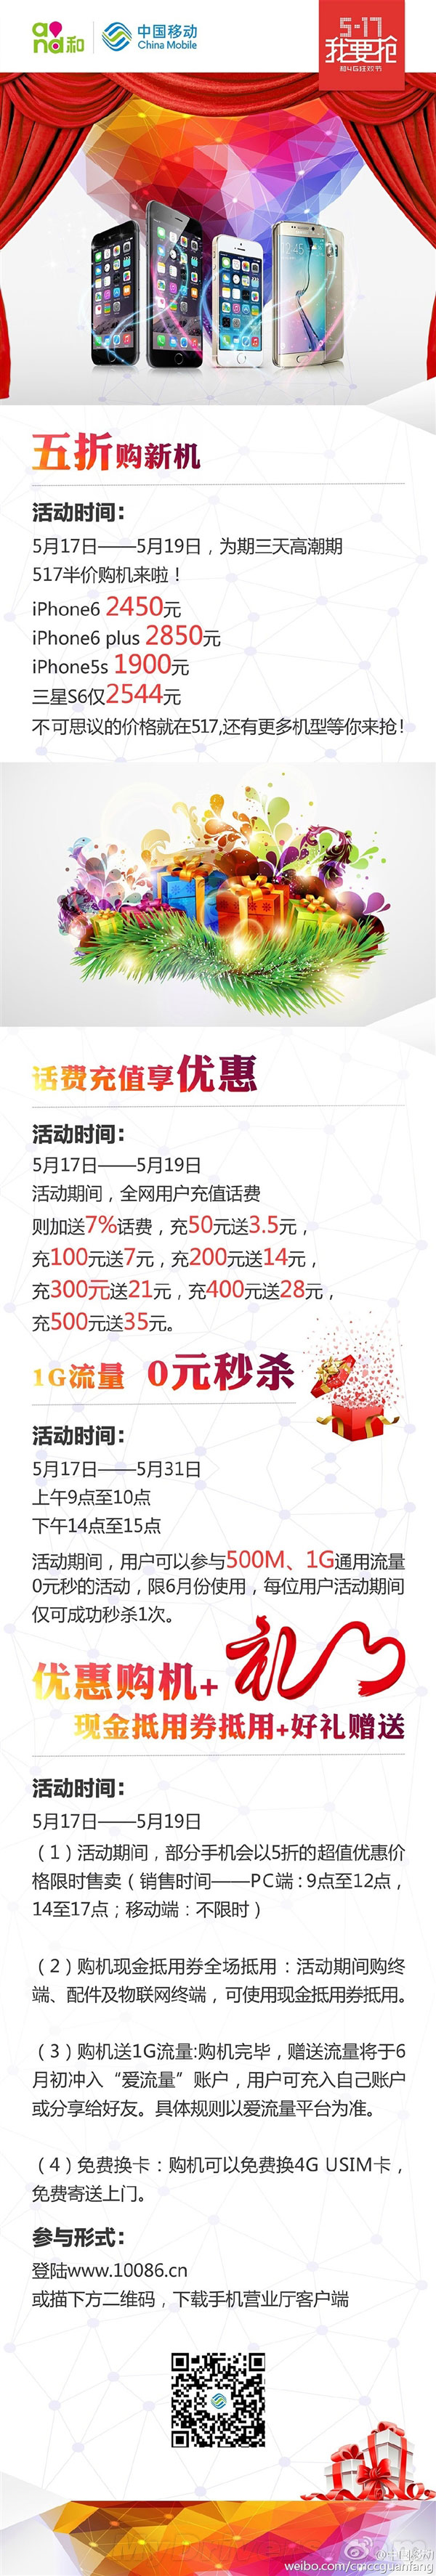 中国移动5.17大优惠：iPhone 6半价购机